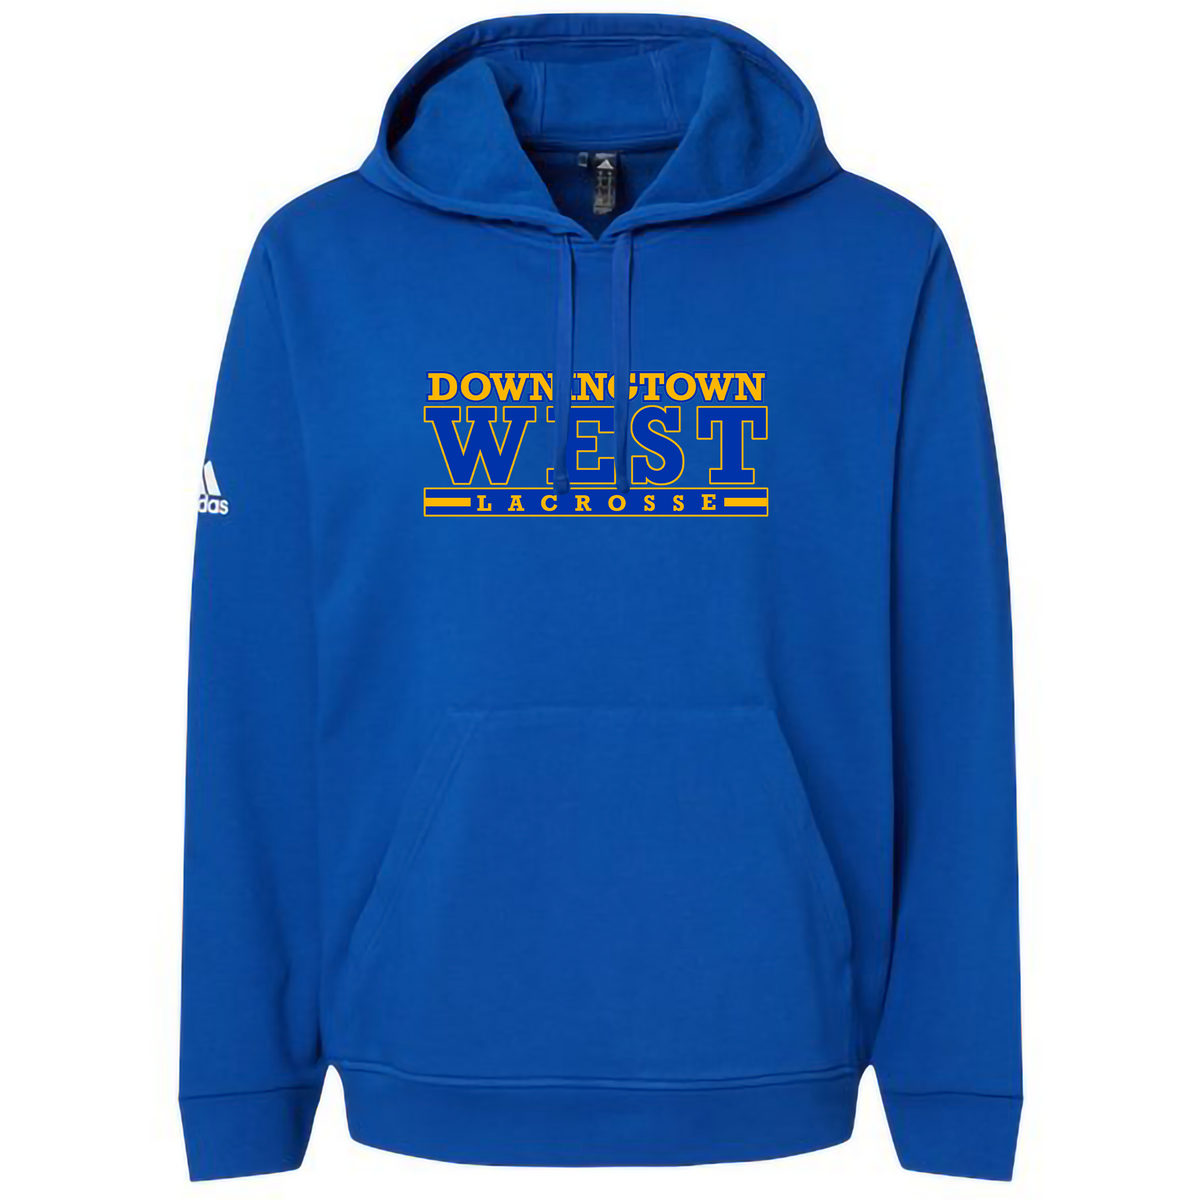 Downingtown West Lacrosse Fleece Sweatshirt